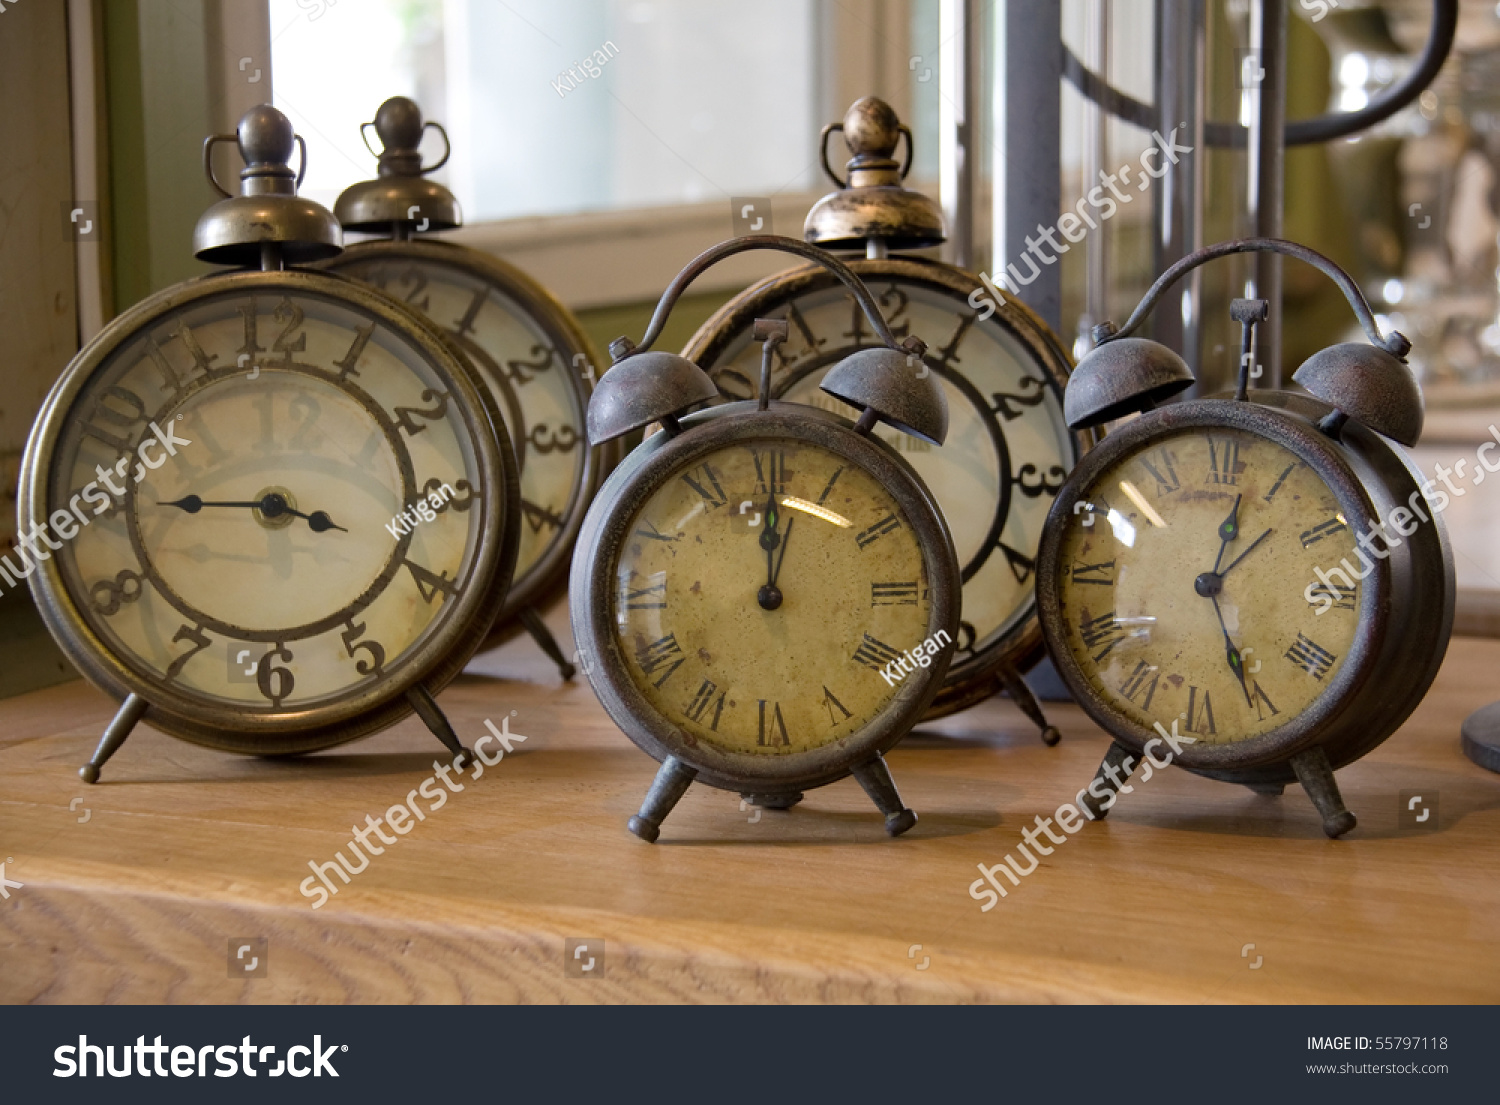 Image result for images of vintage alarm clocks